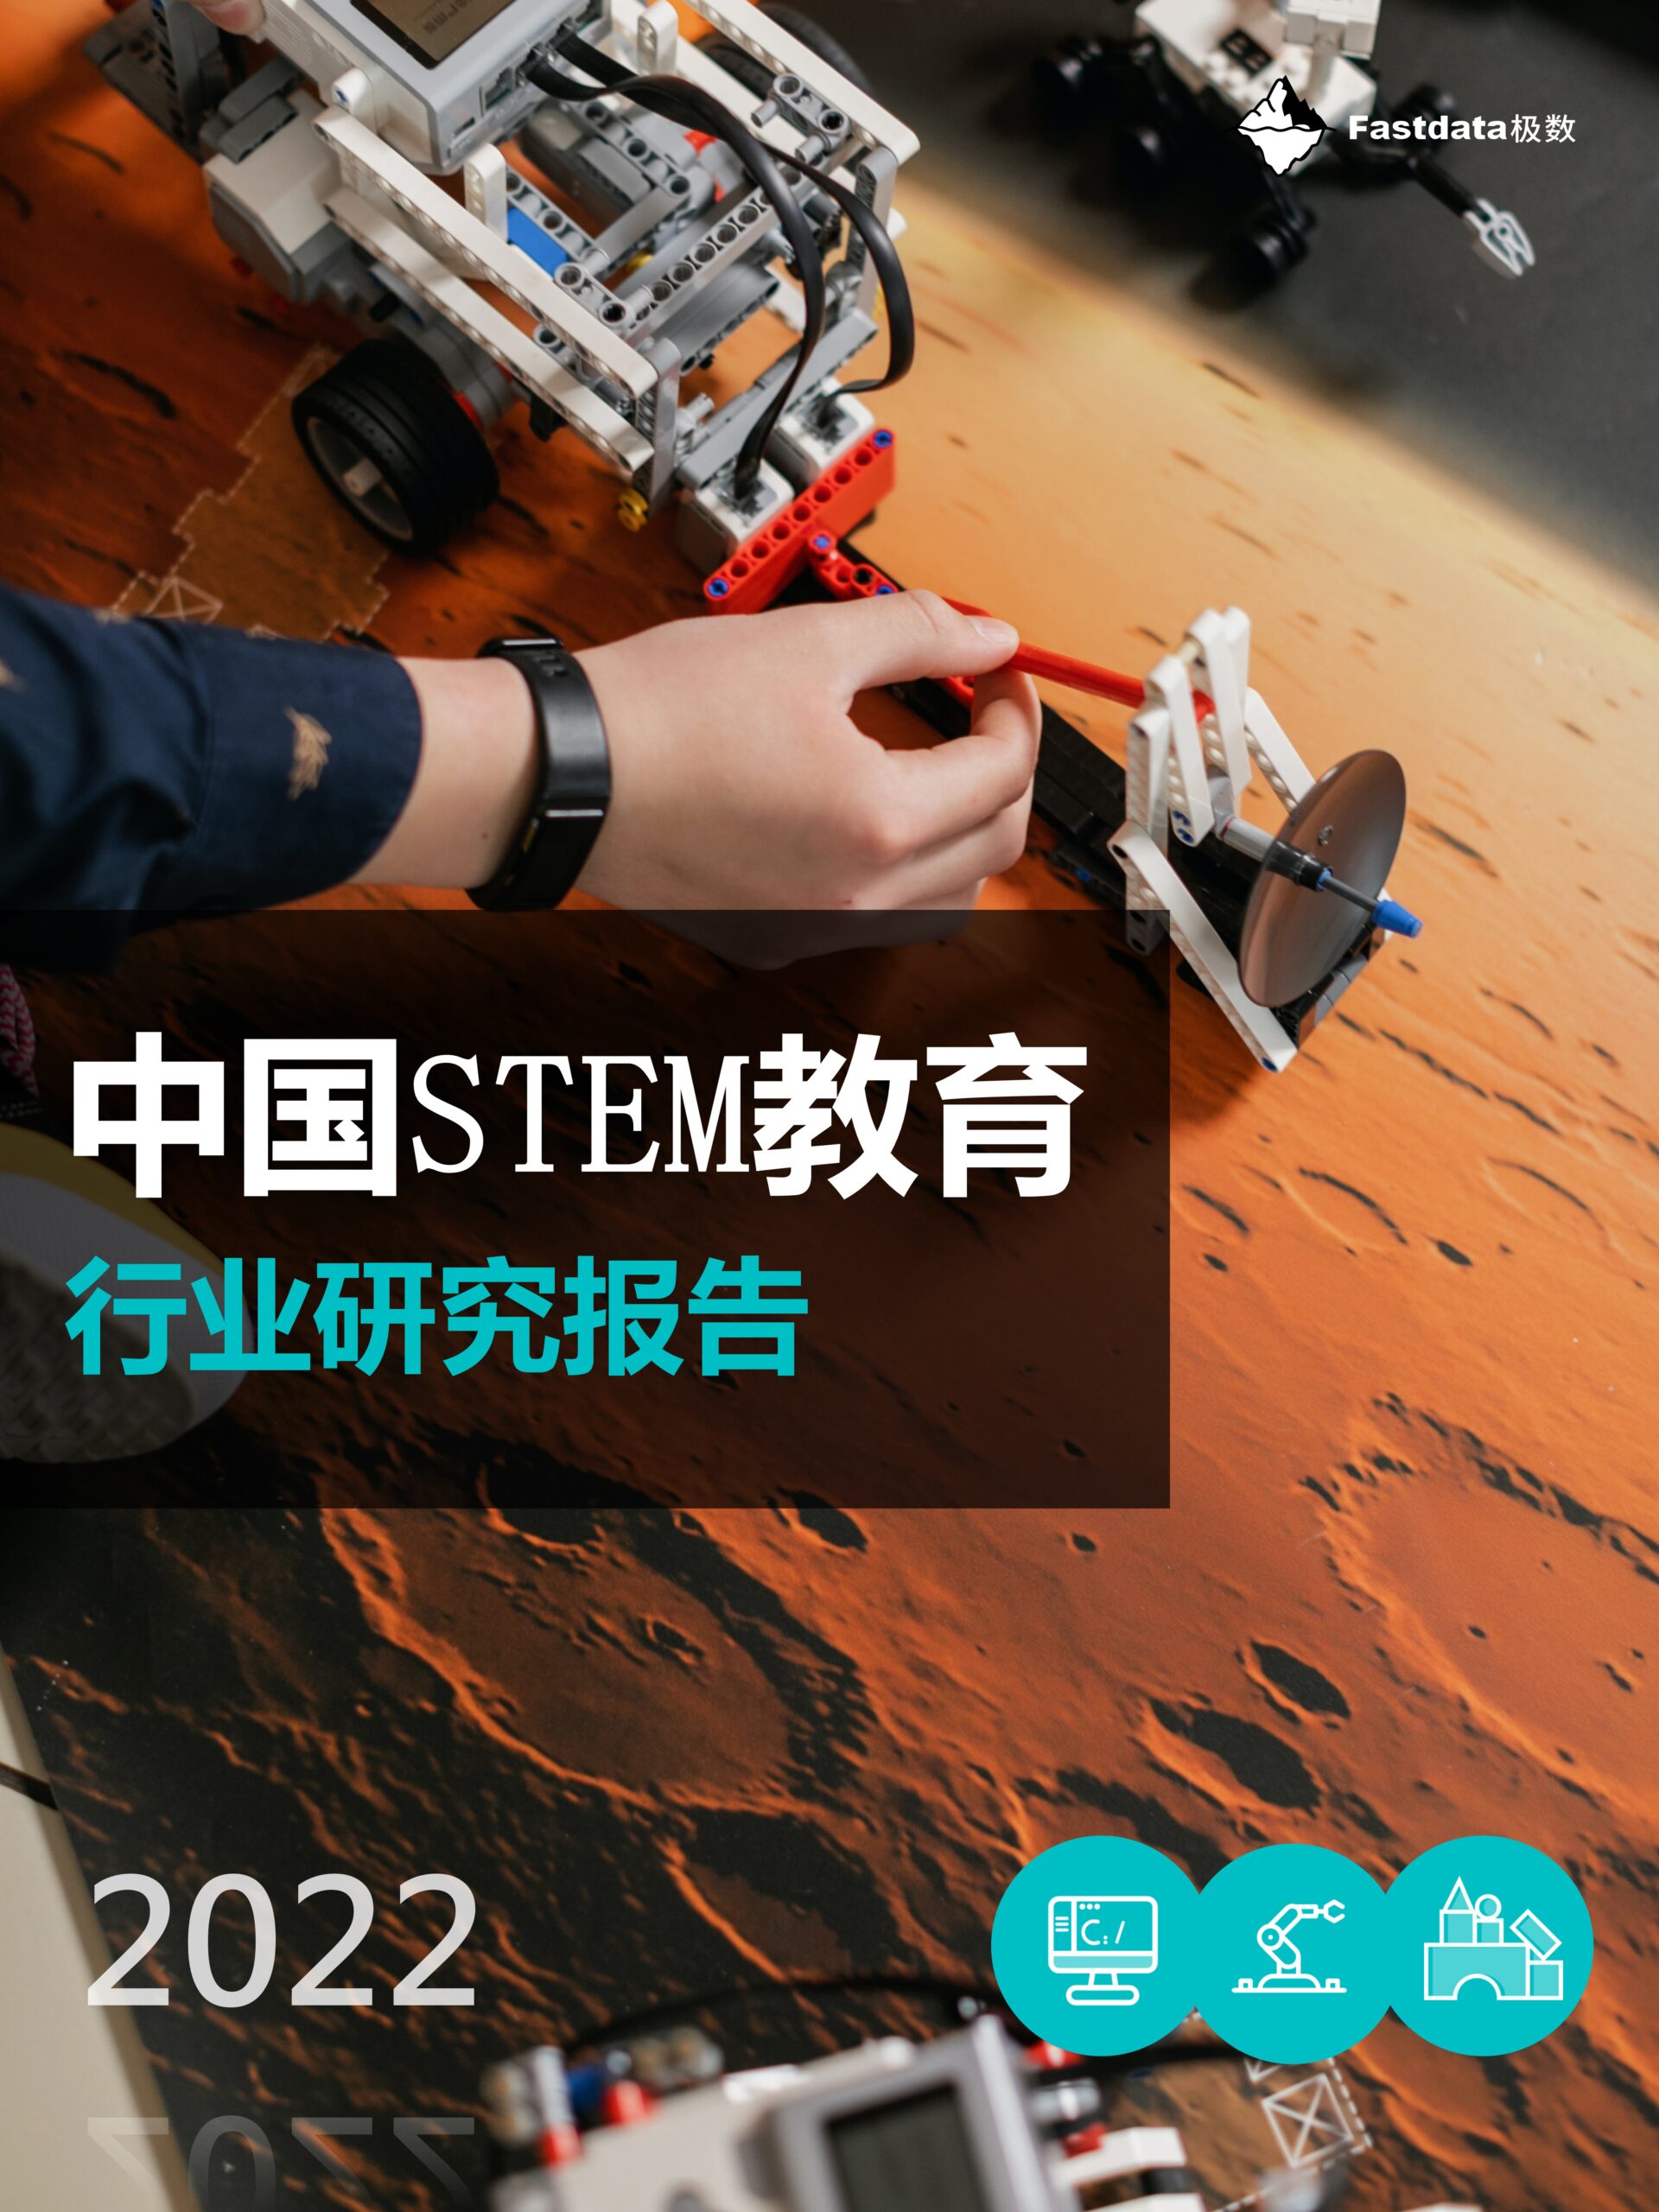 Fastdata极数:2022年中国STEM教育行业研究报告